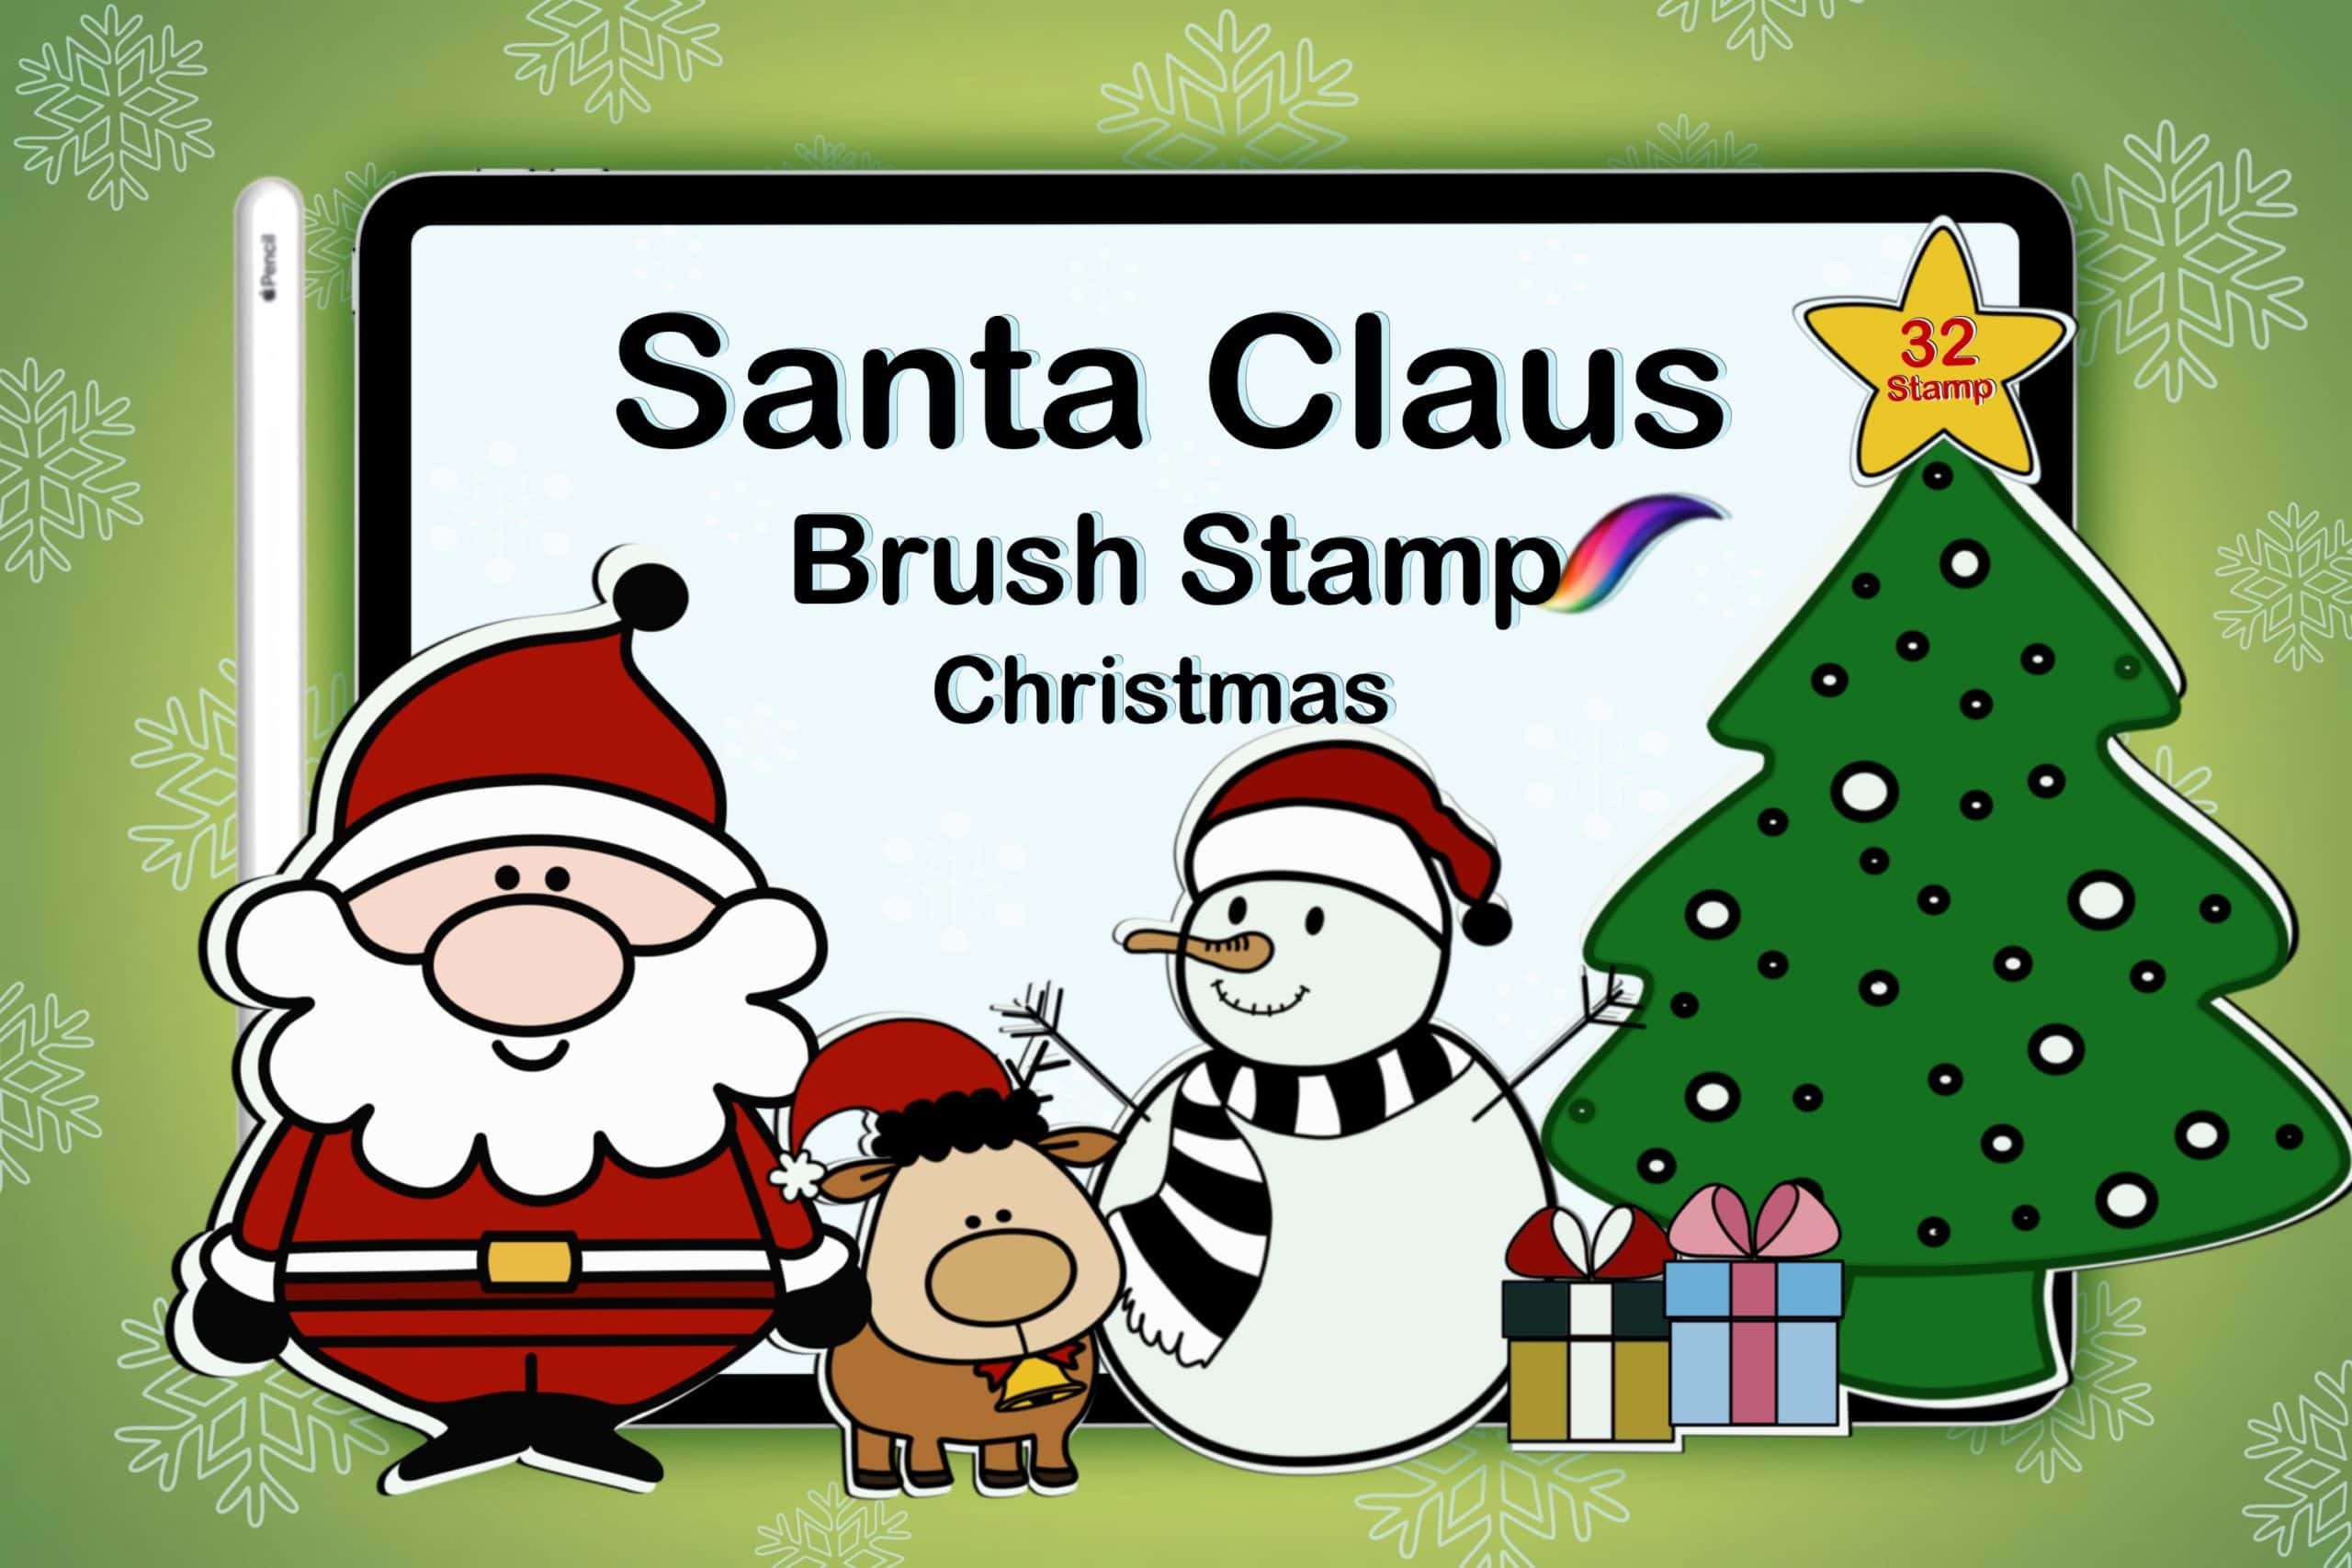 Procreate Brushes Christmas Santa set